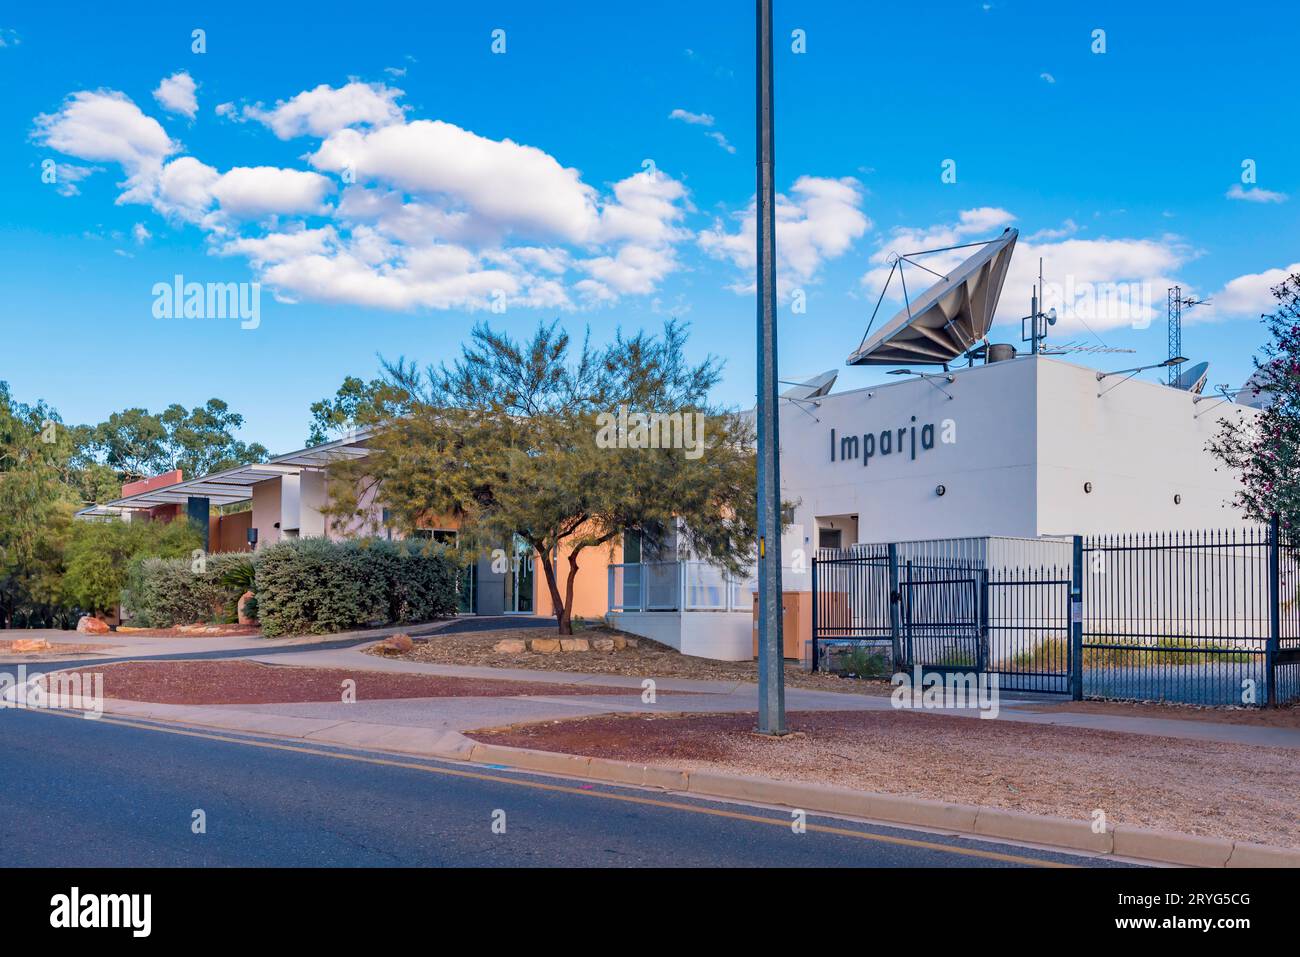 Imparja Television est une société de télévision desservant l'est et le centre de l'Australie. Basé à Alice Springs, il appartient aux indigènes australiens Banque D'Images